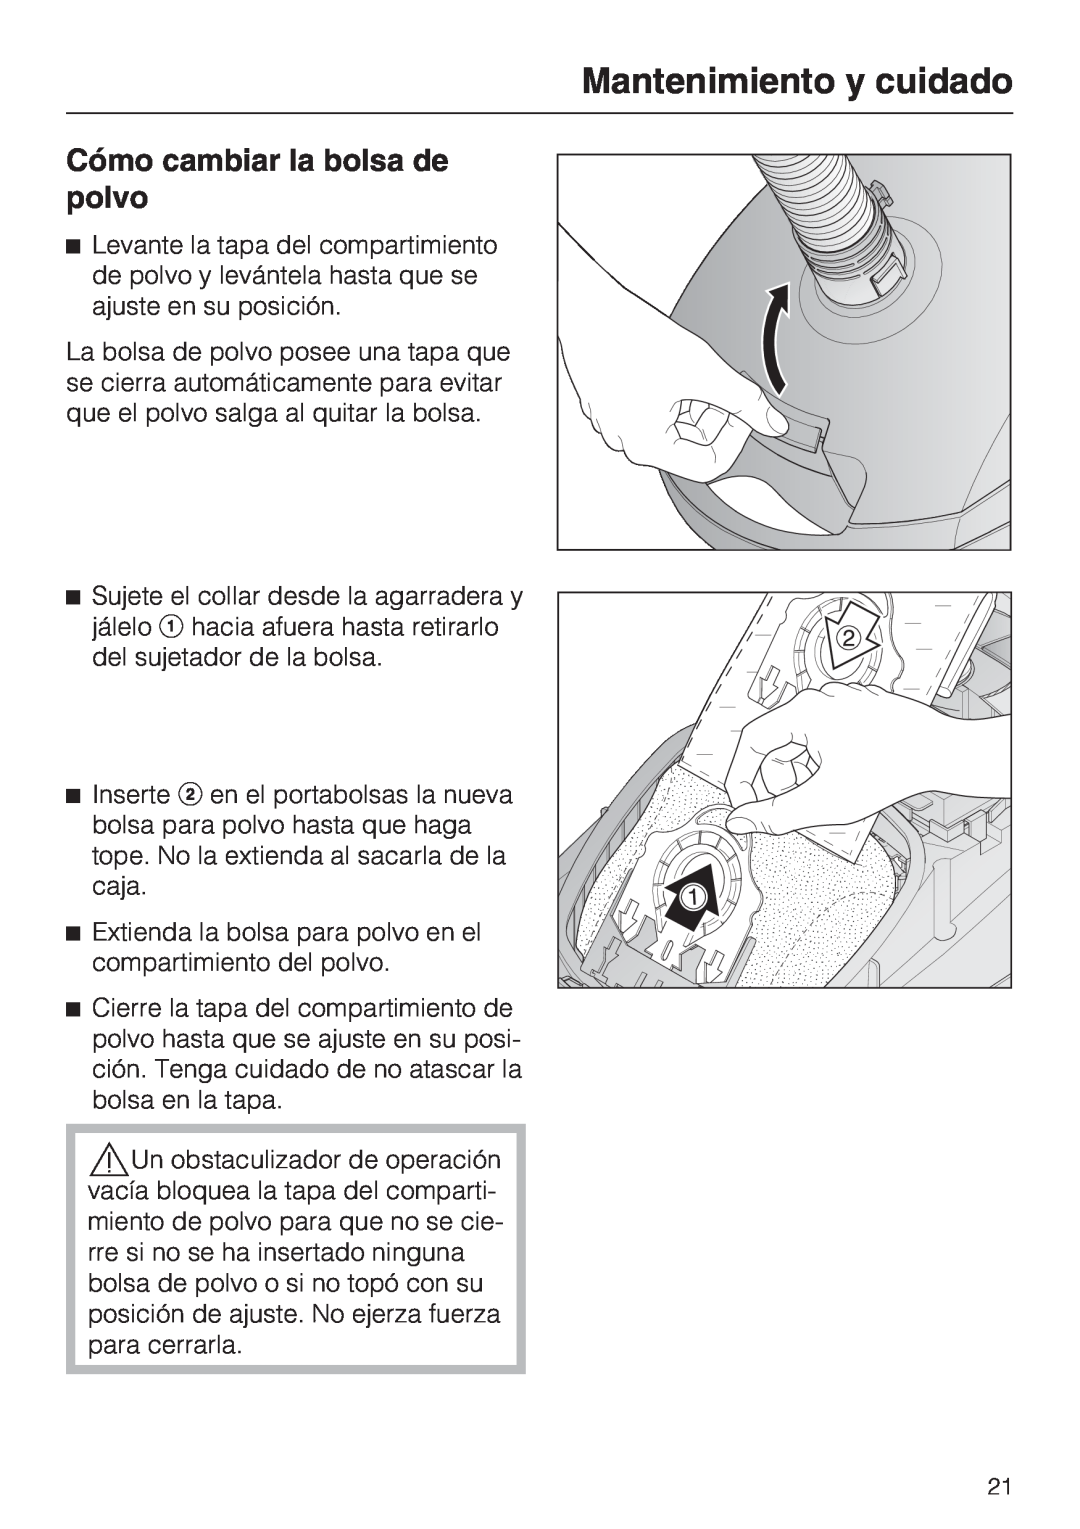 Miele S 2000 operating instructions Cómo cambiar la bolsa de polvo, Mantenimiento y cuidado 